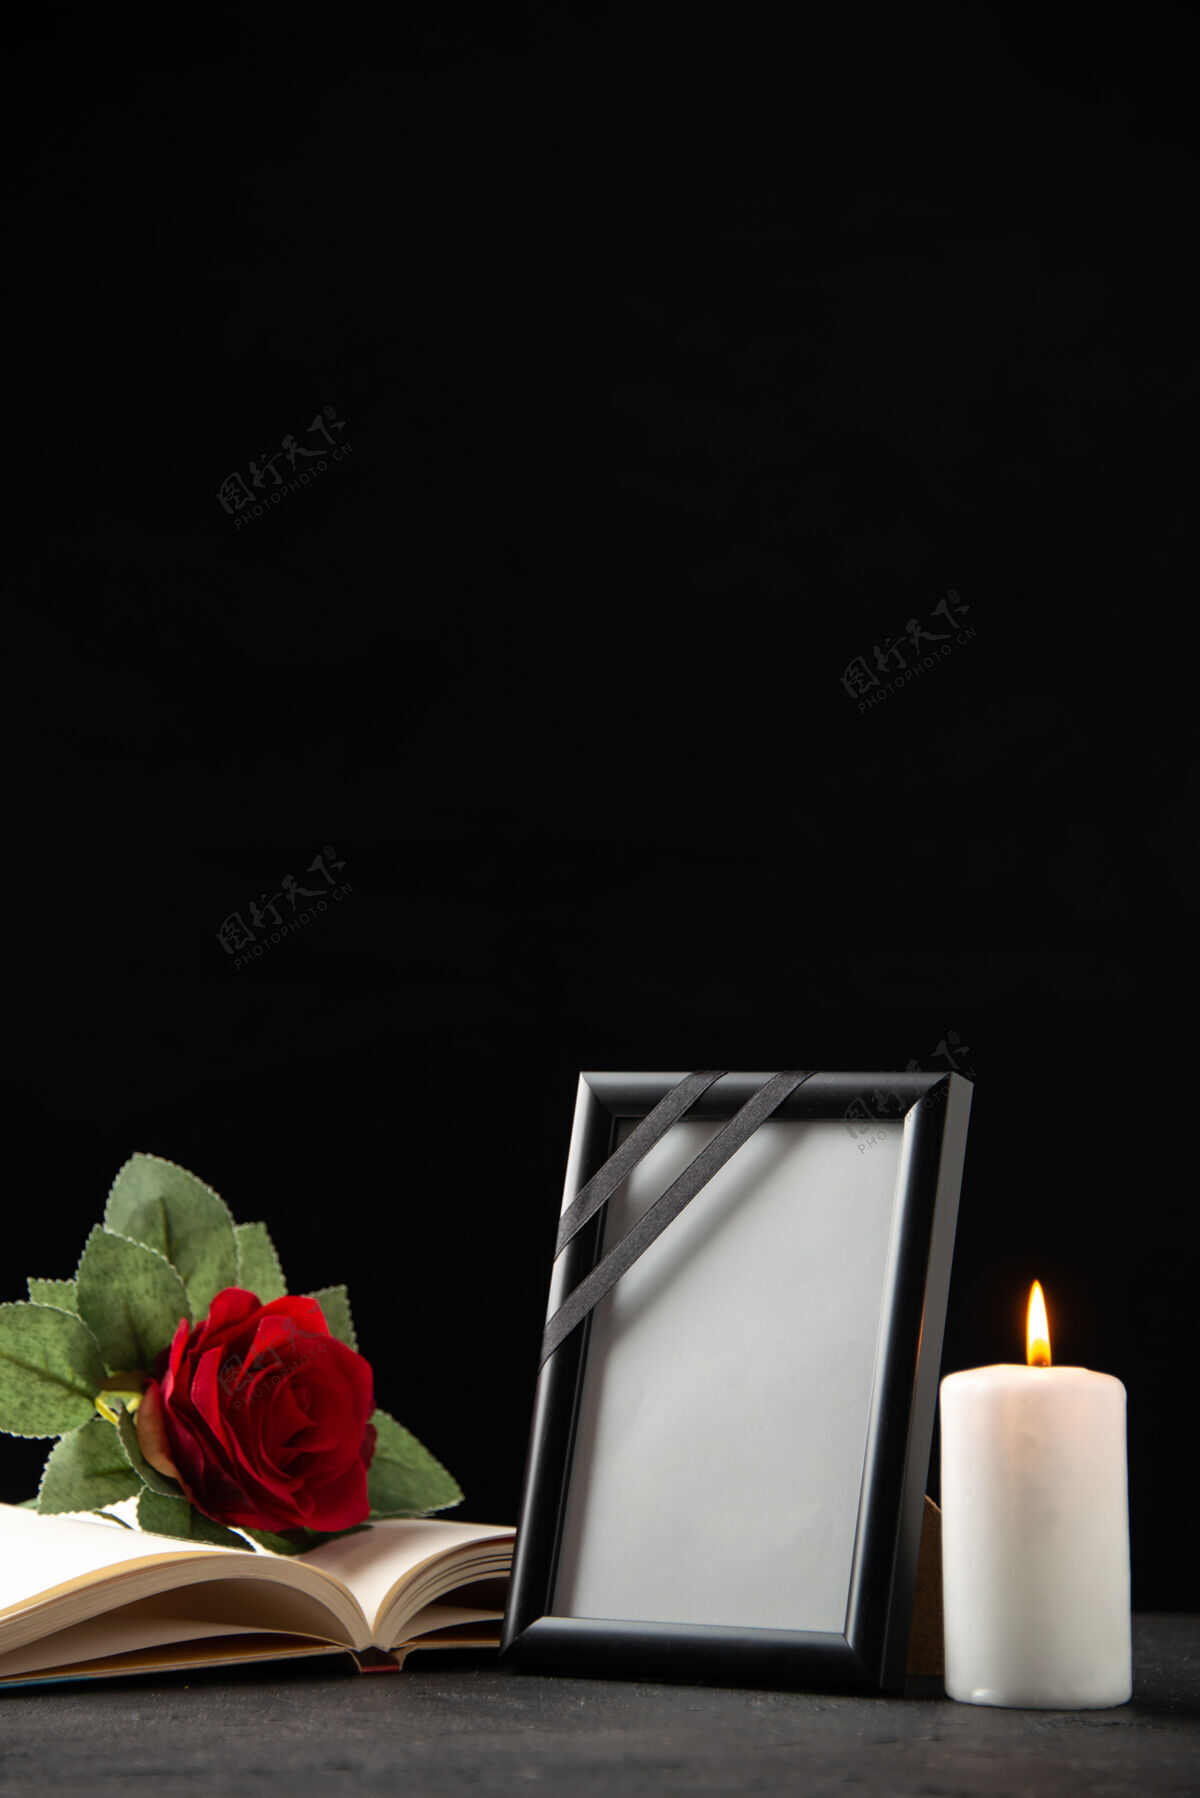 葬礼红玫瑰的正面图 黑色的书和画框叶子打蜡蜡烛